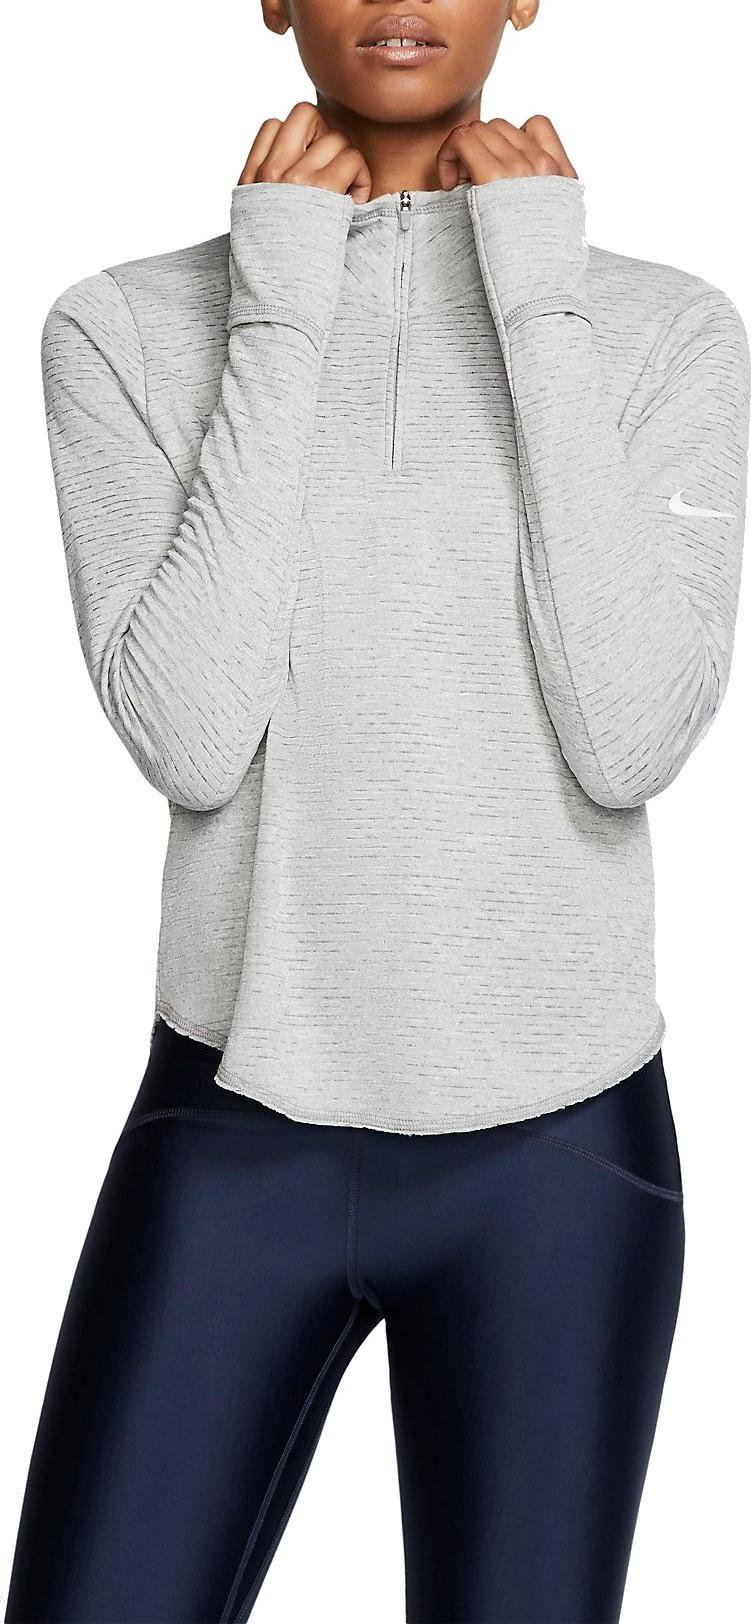 Dámský běžecký top s dlouhým rukávem Nike Sphere